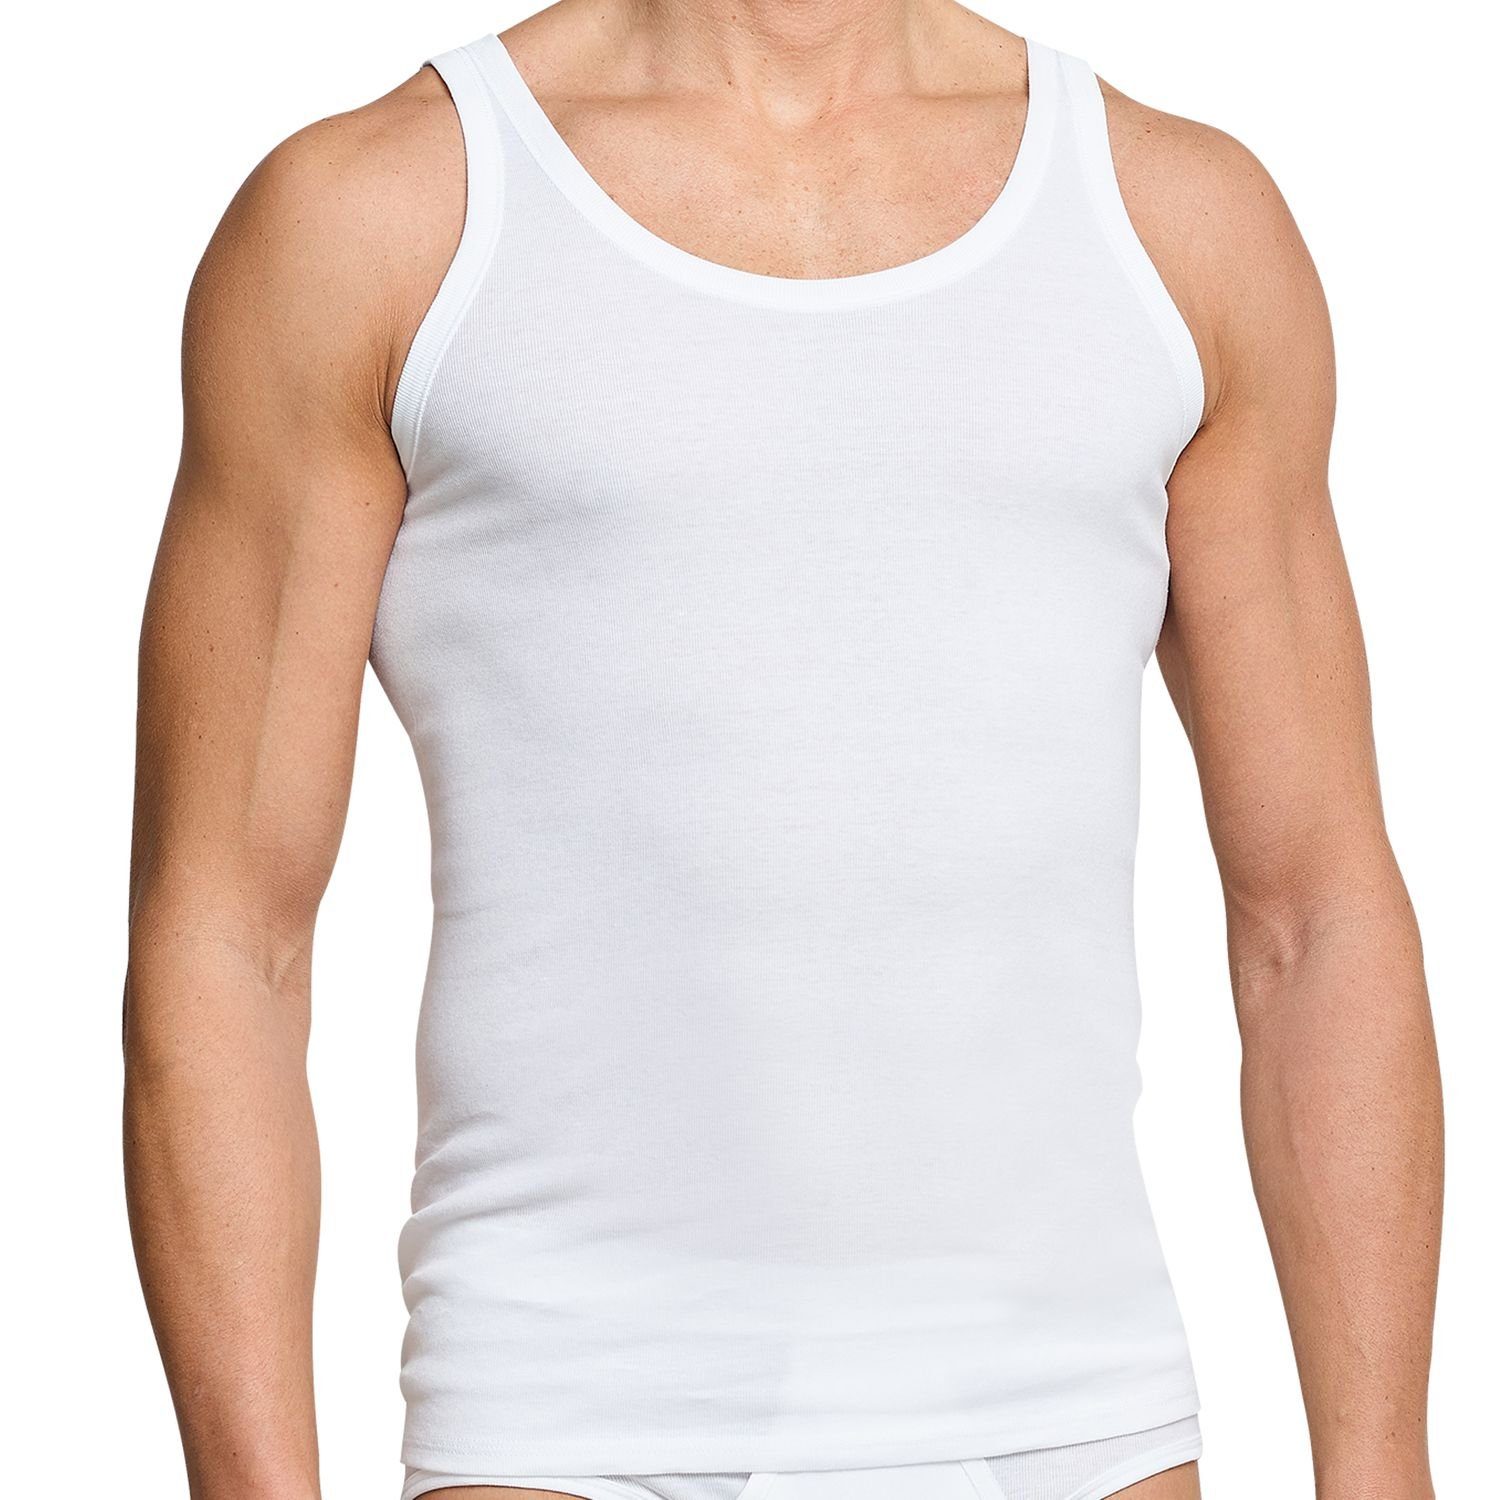 Herren Unterhemden aus 100% Baumwolle Achselhemd Grau 4 Stück 